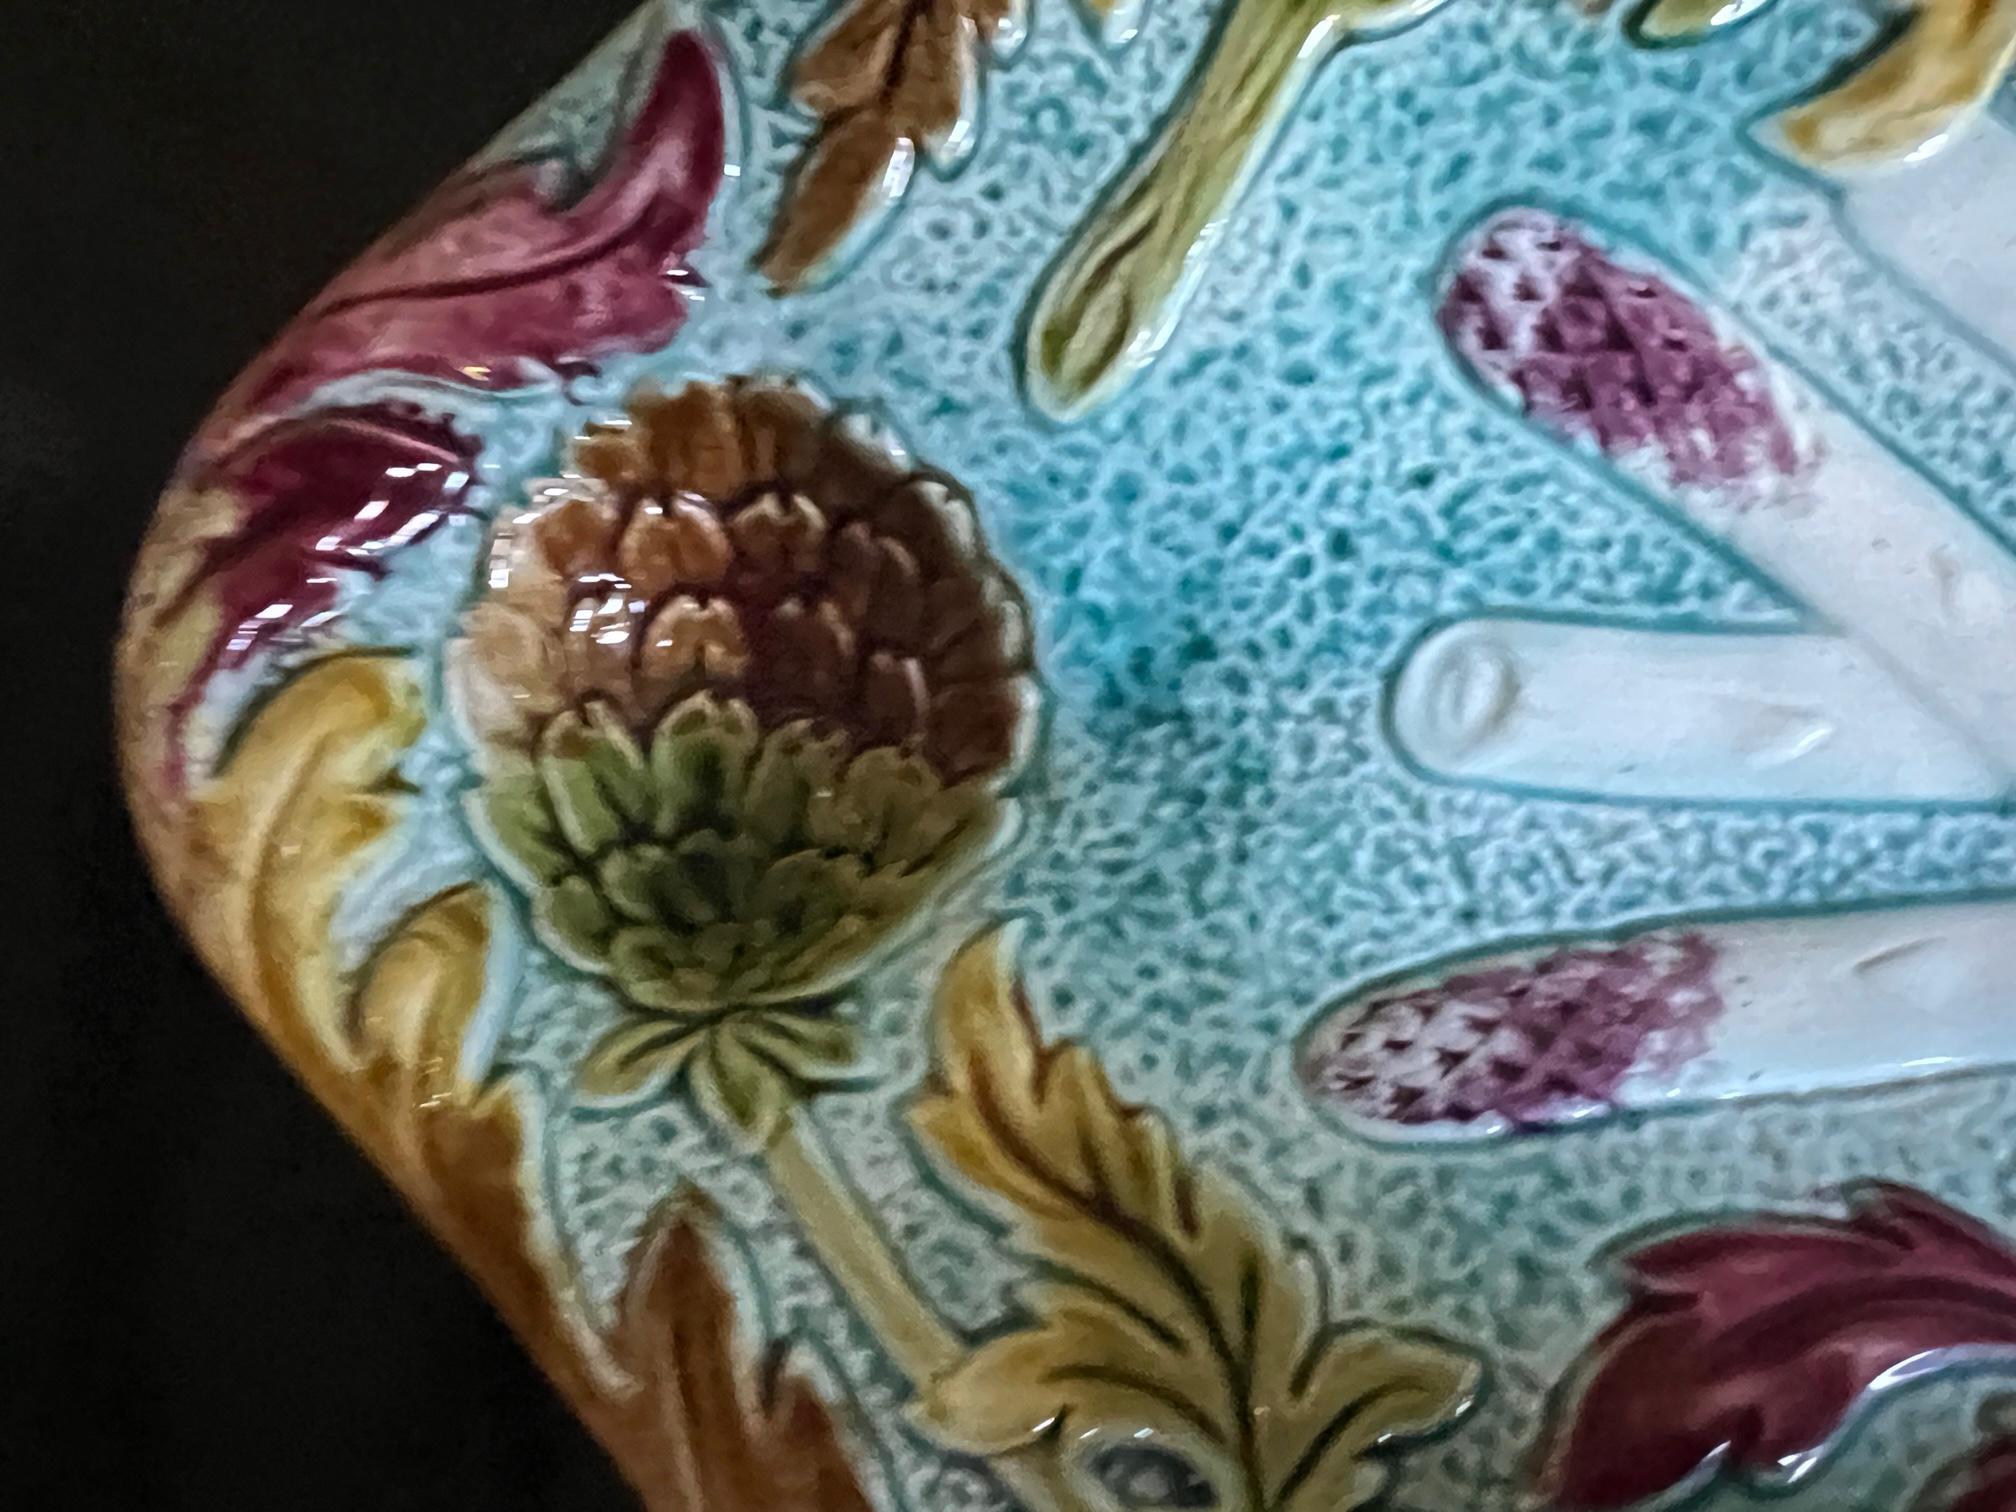 Plat à asperges et artichauts en majolique française aux couleurs vives, fabriqué à l'usine d'Orchies à la fin des années 1800. Le plateau a un bord festonné, un fond turquoise avec des fleurs d'artichaut et des feuilles de couleur automnale. Les